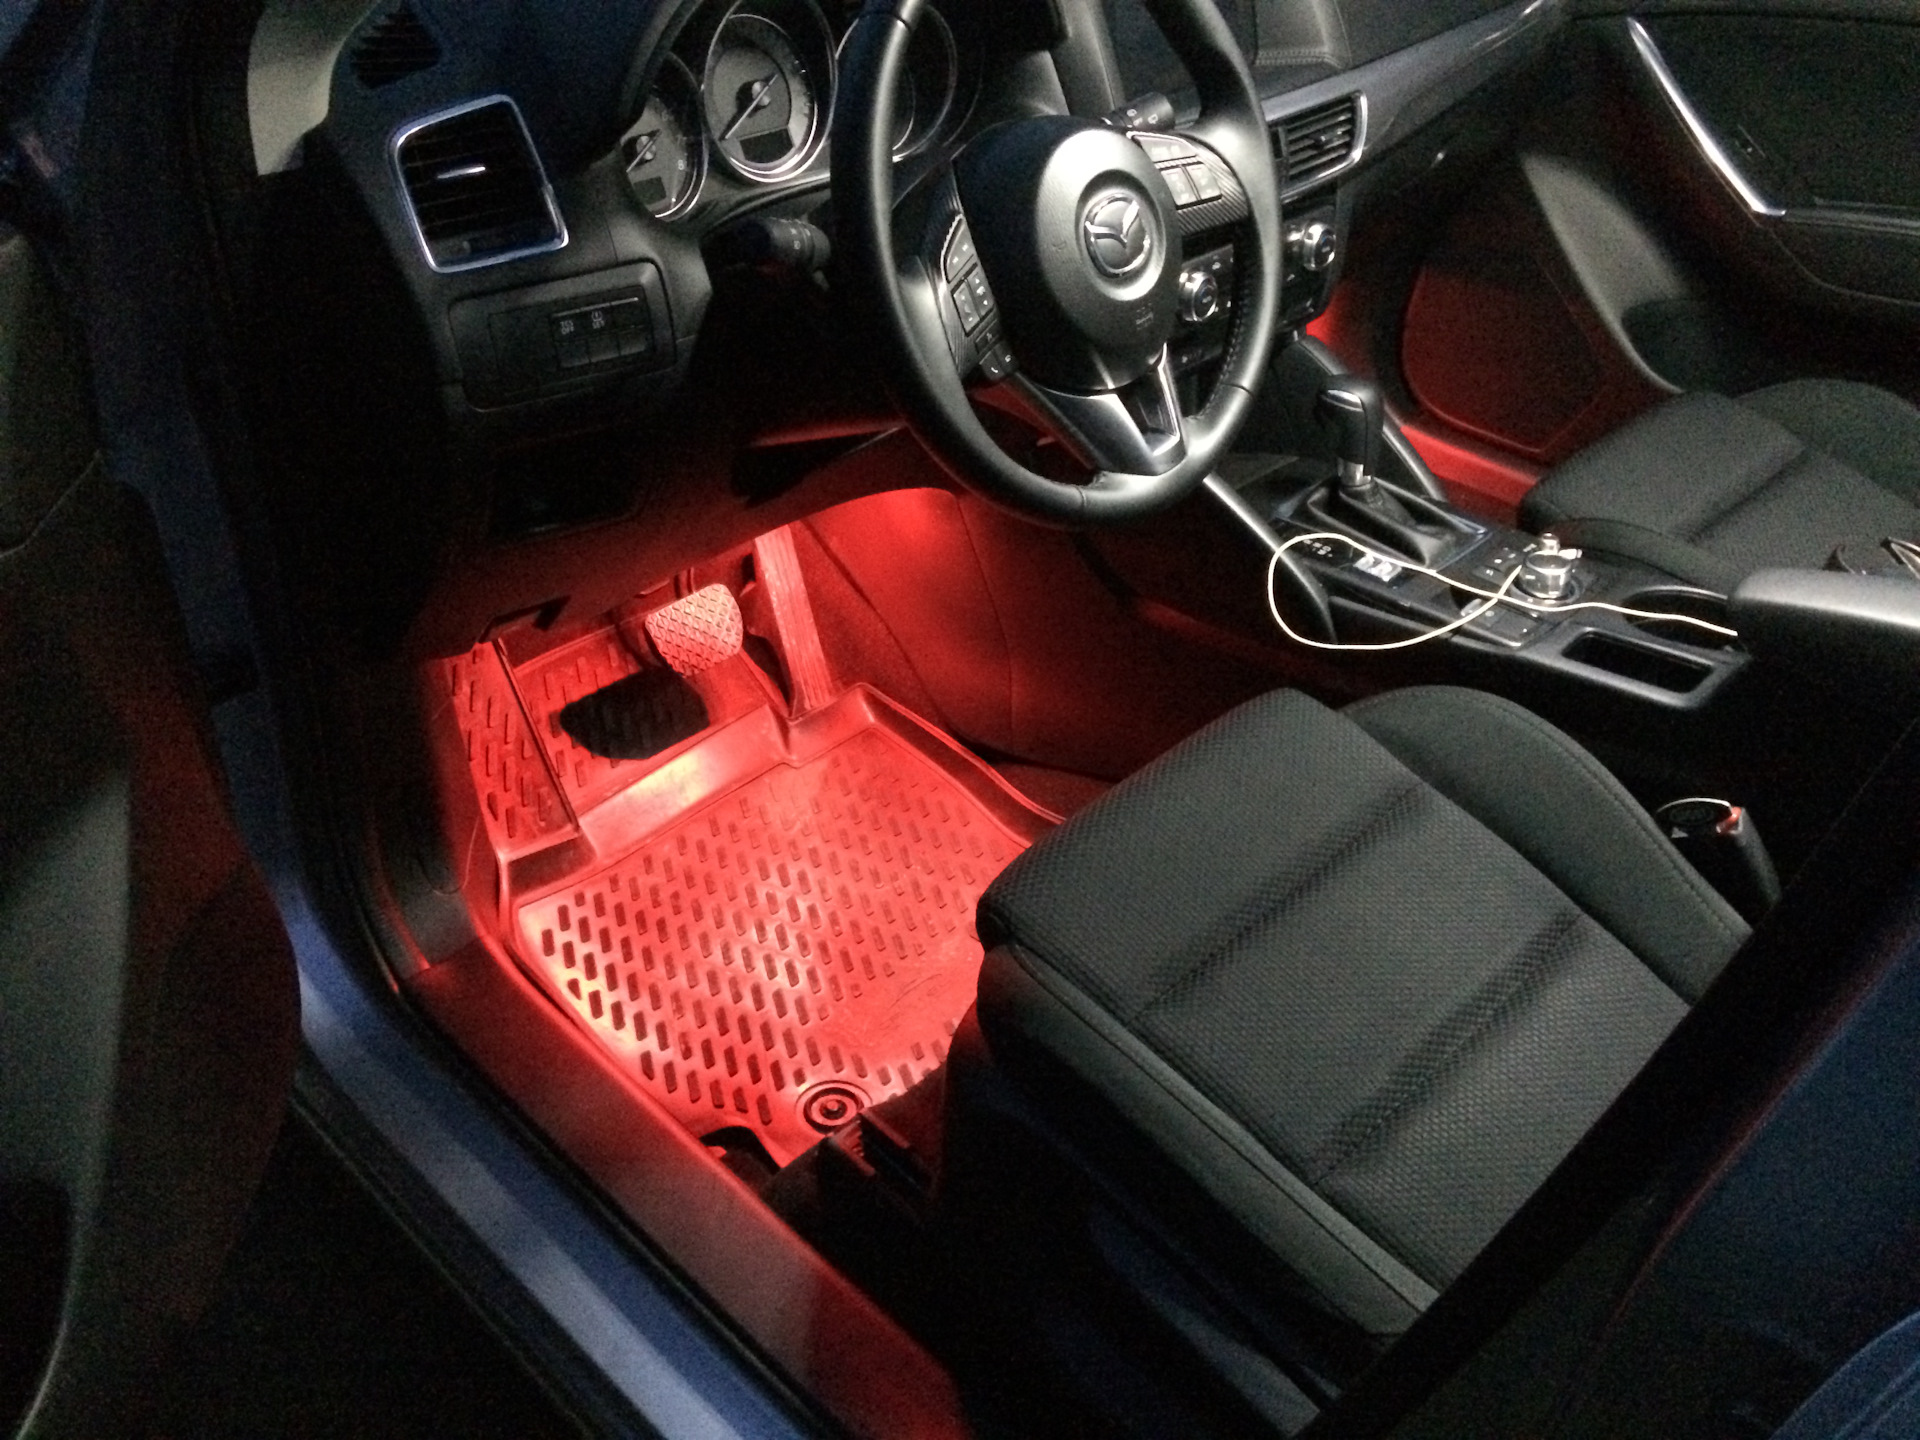 Подсветка мазда сх5. Подсветка ног Mazda 6 gg. Подсветка Mazda CX 5. Подсветка салона Mazda CX-5. Подсветка ног Мазда СХ-5 2016.